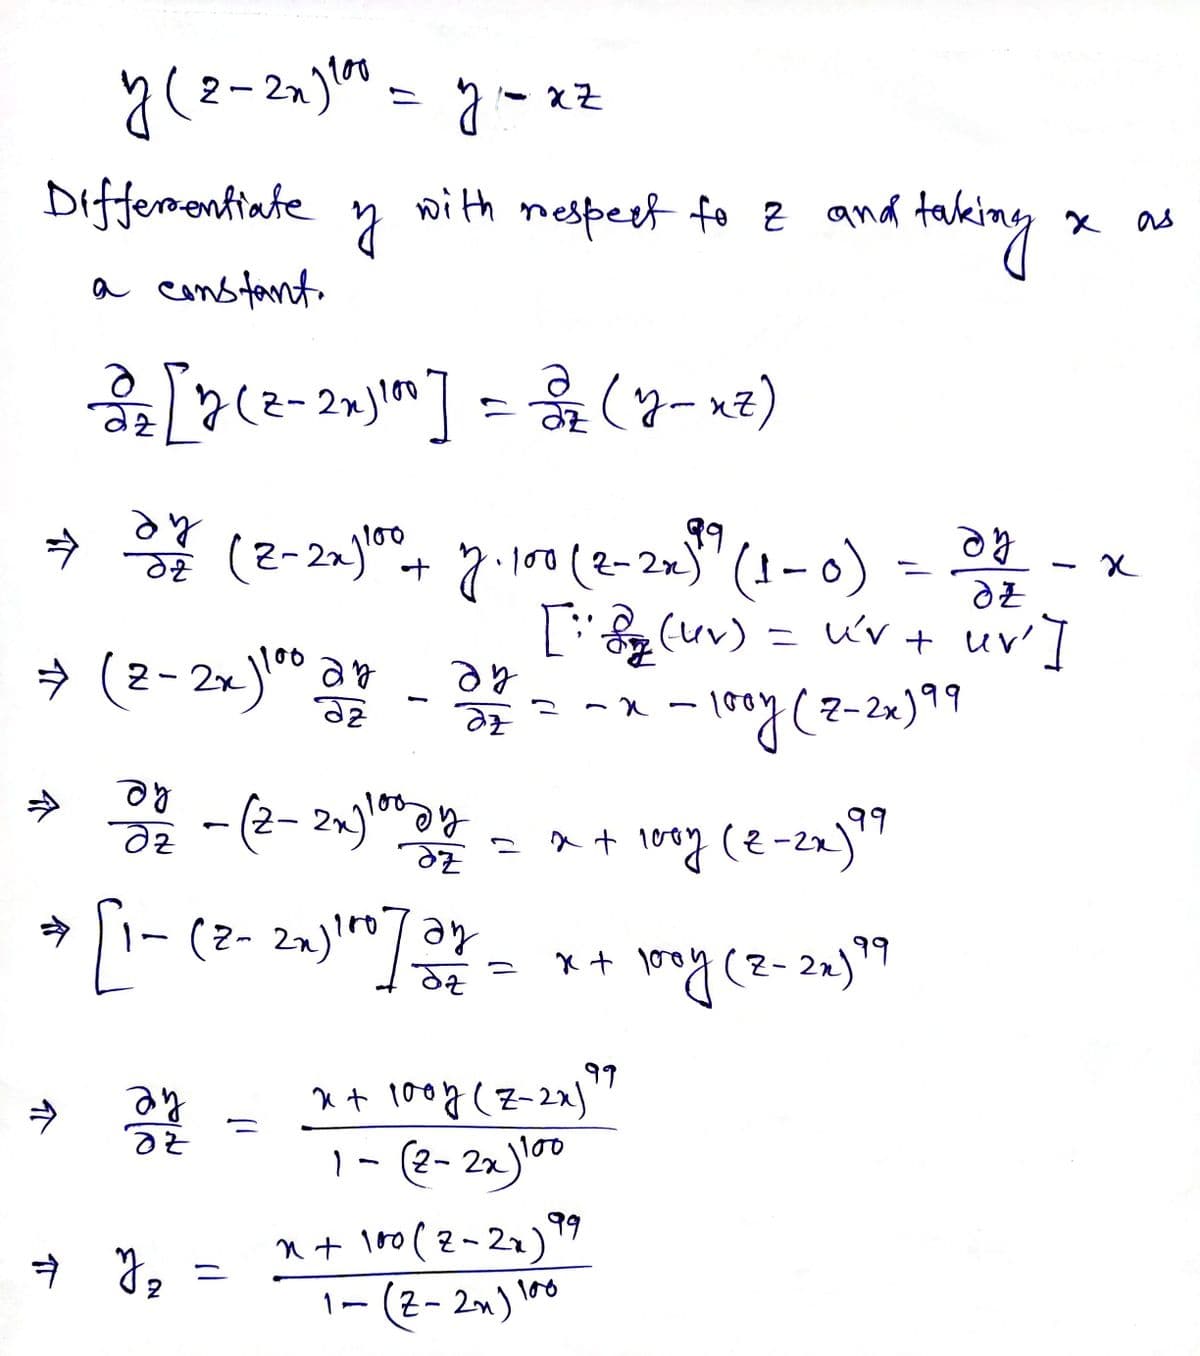 2– 2n)" = y- xz
Differrontiate
with
taking
nespert fo z and
X as
a cans fant.
he
→ * (2-2)", 7(2-20" (1-0) = - x
(uv) = uv+ uv']
» (2-2»)" a - 37- - - y(2-20)*"
100
39
he
100
he
- (2- 2%)y
99
99
he
ay
99
x t 100g (Z-2x)
1- (2- 2x)0
n + lo0(2-22)9
1-(2- 2n) l00
个
